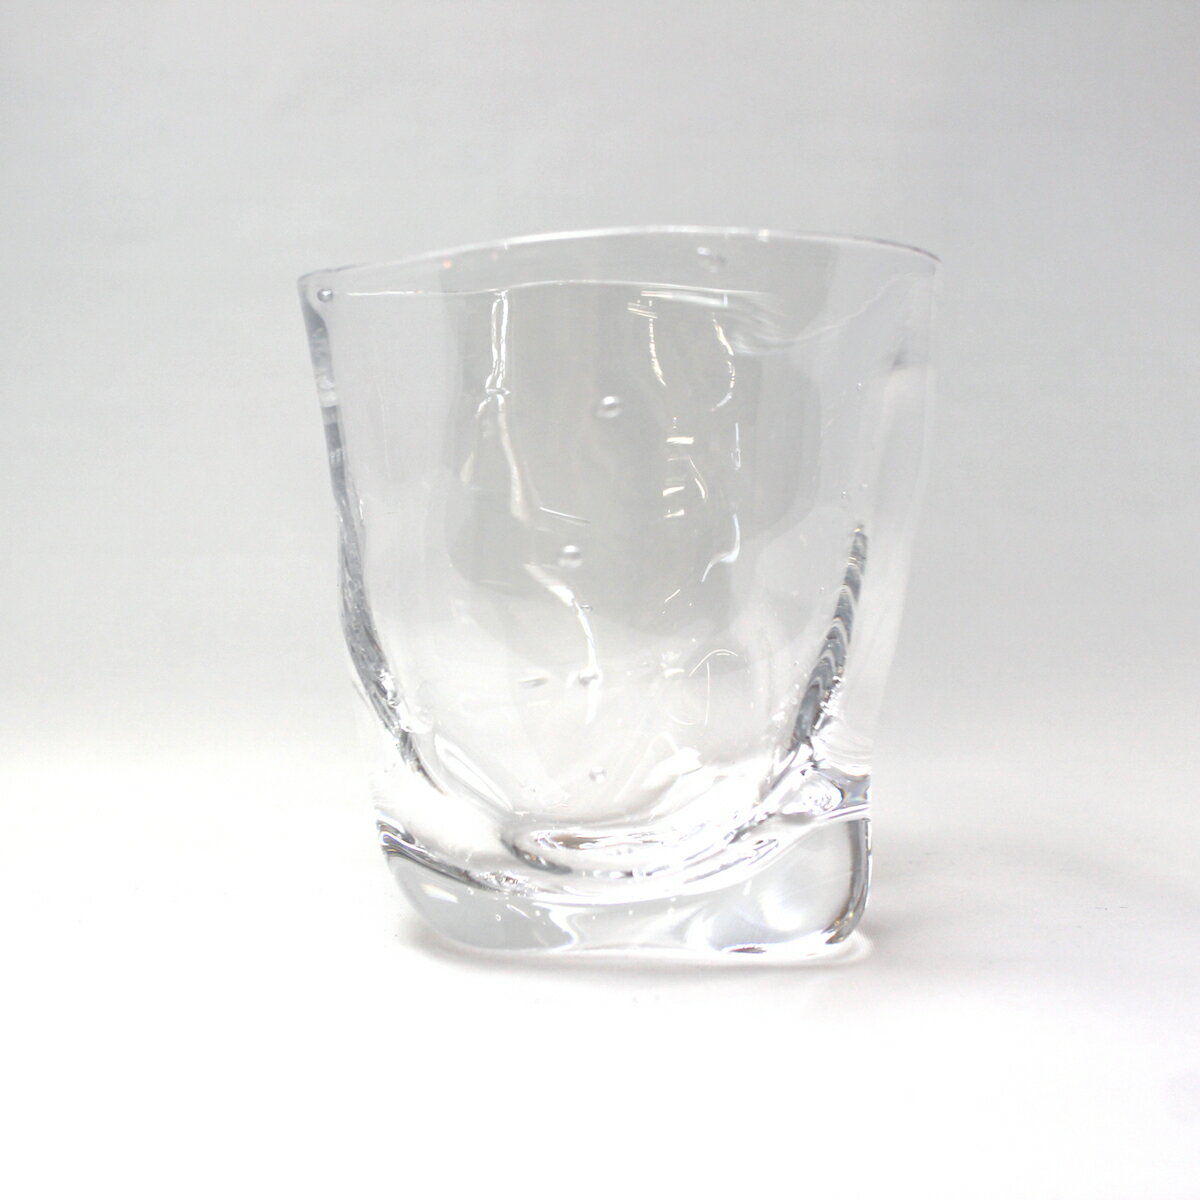 glasscalicoグラスキャリコハンドメイドガラス酒器ミナモウイスキーロックグラスおしゃれギフトプレゼント